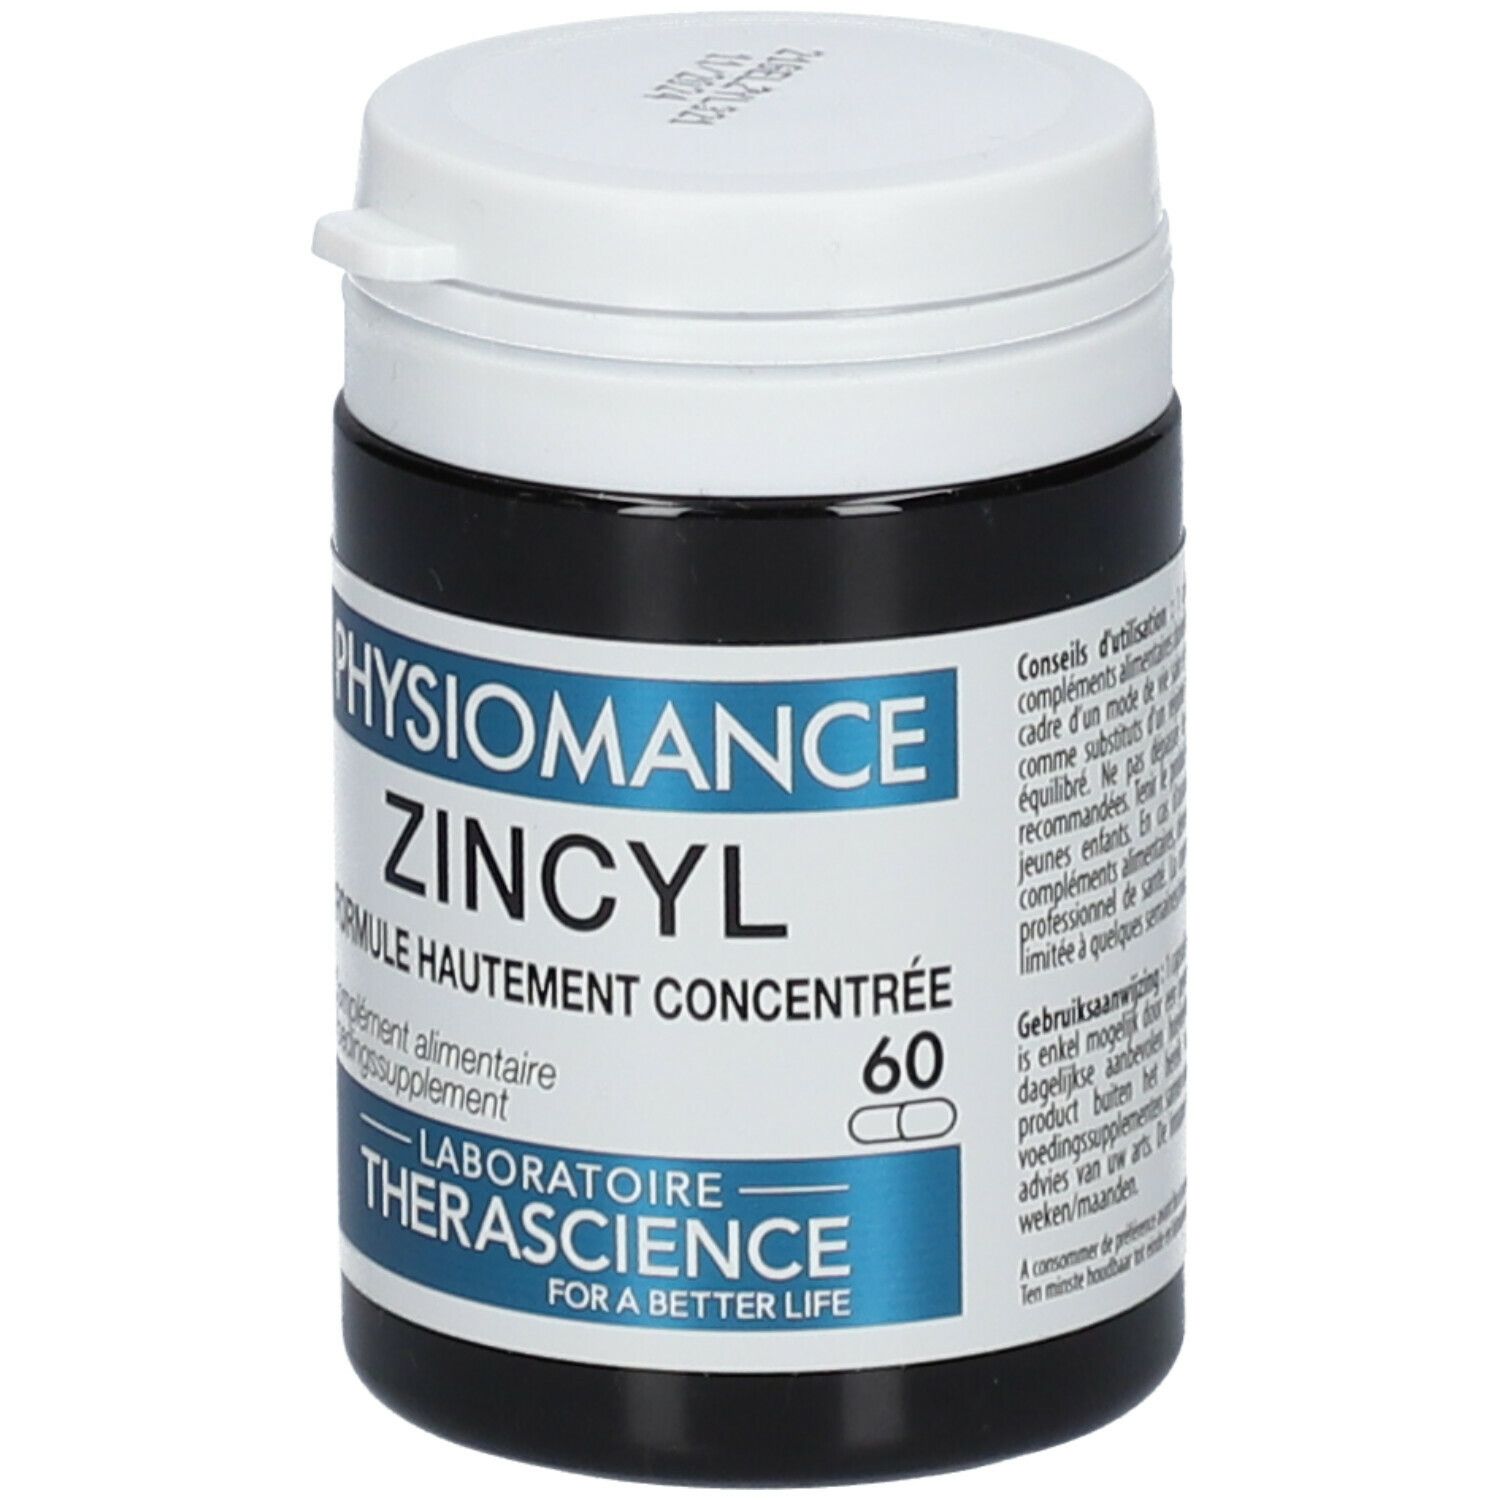 Physiomance Zincyl